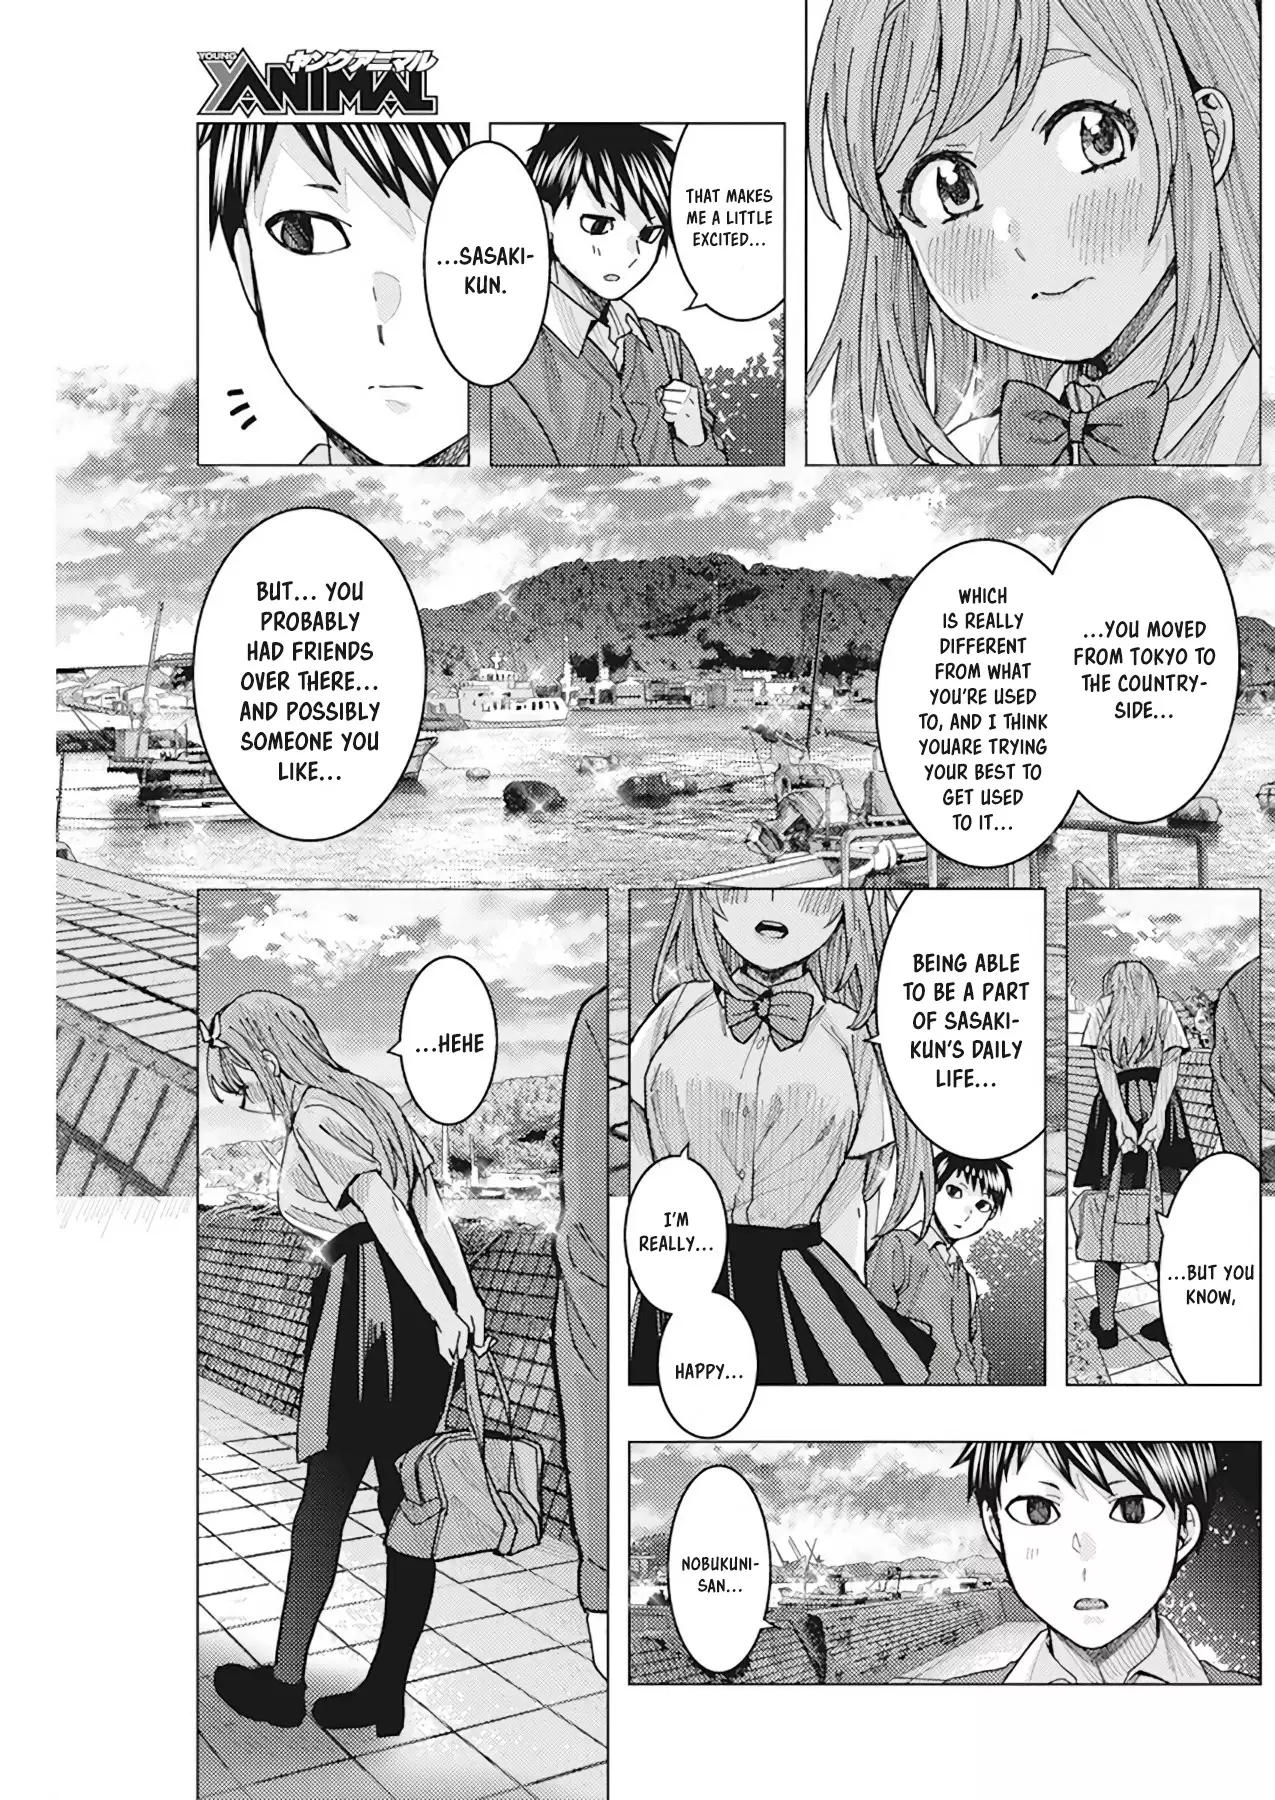 "nobukuni-San" Does She Like Me? - 10 page 11-3ea975f4